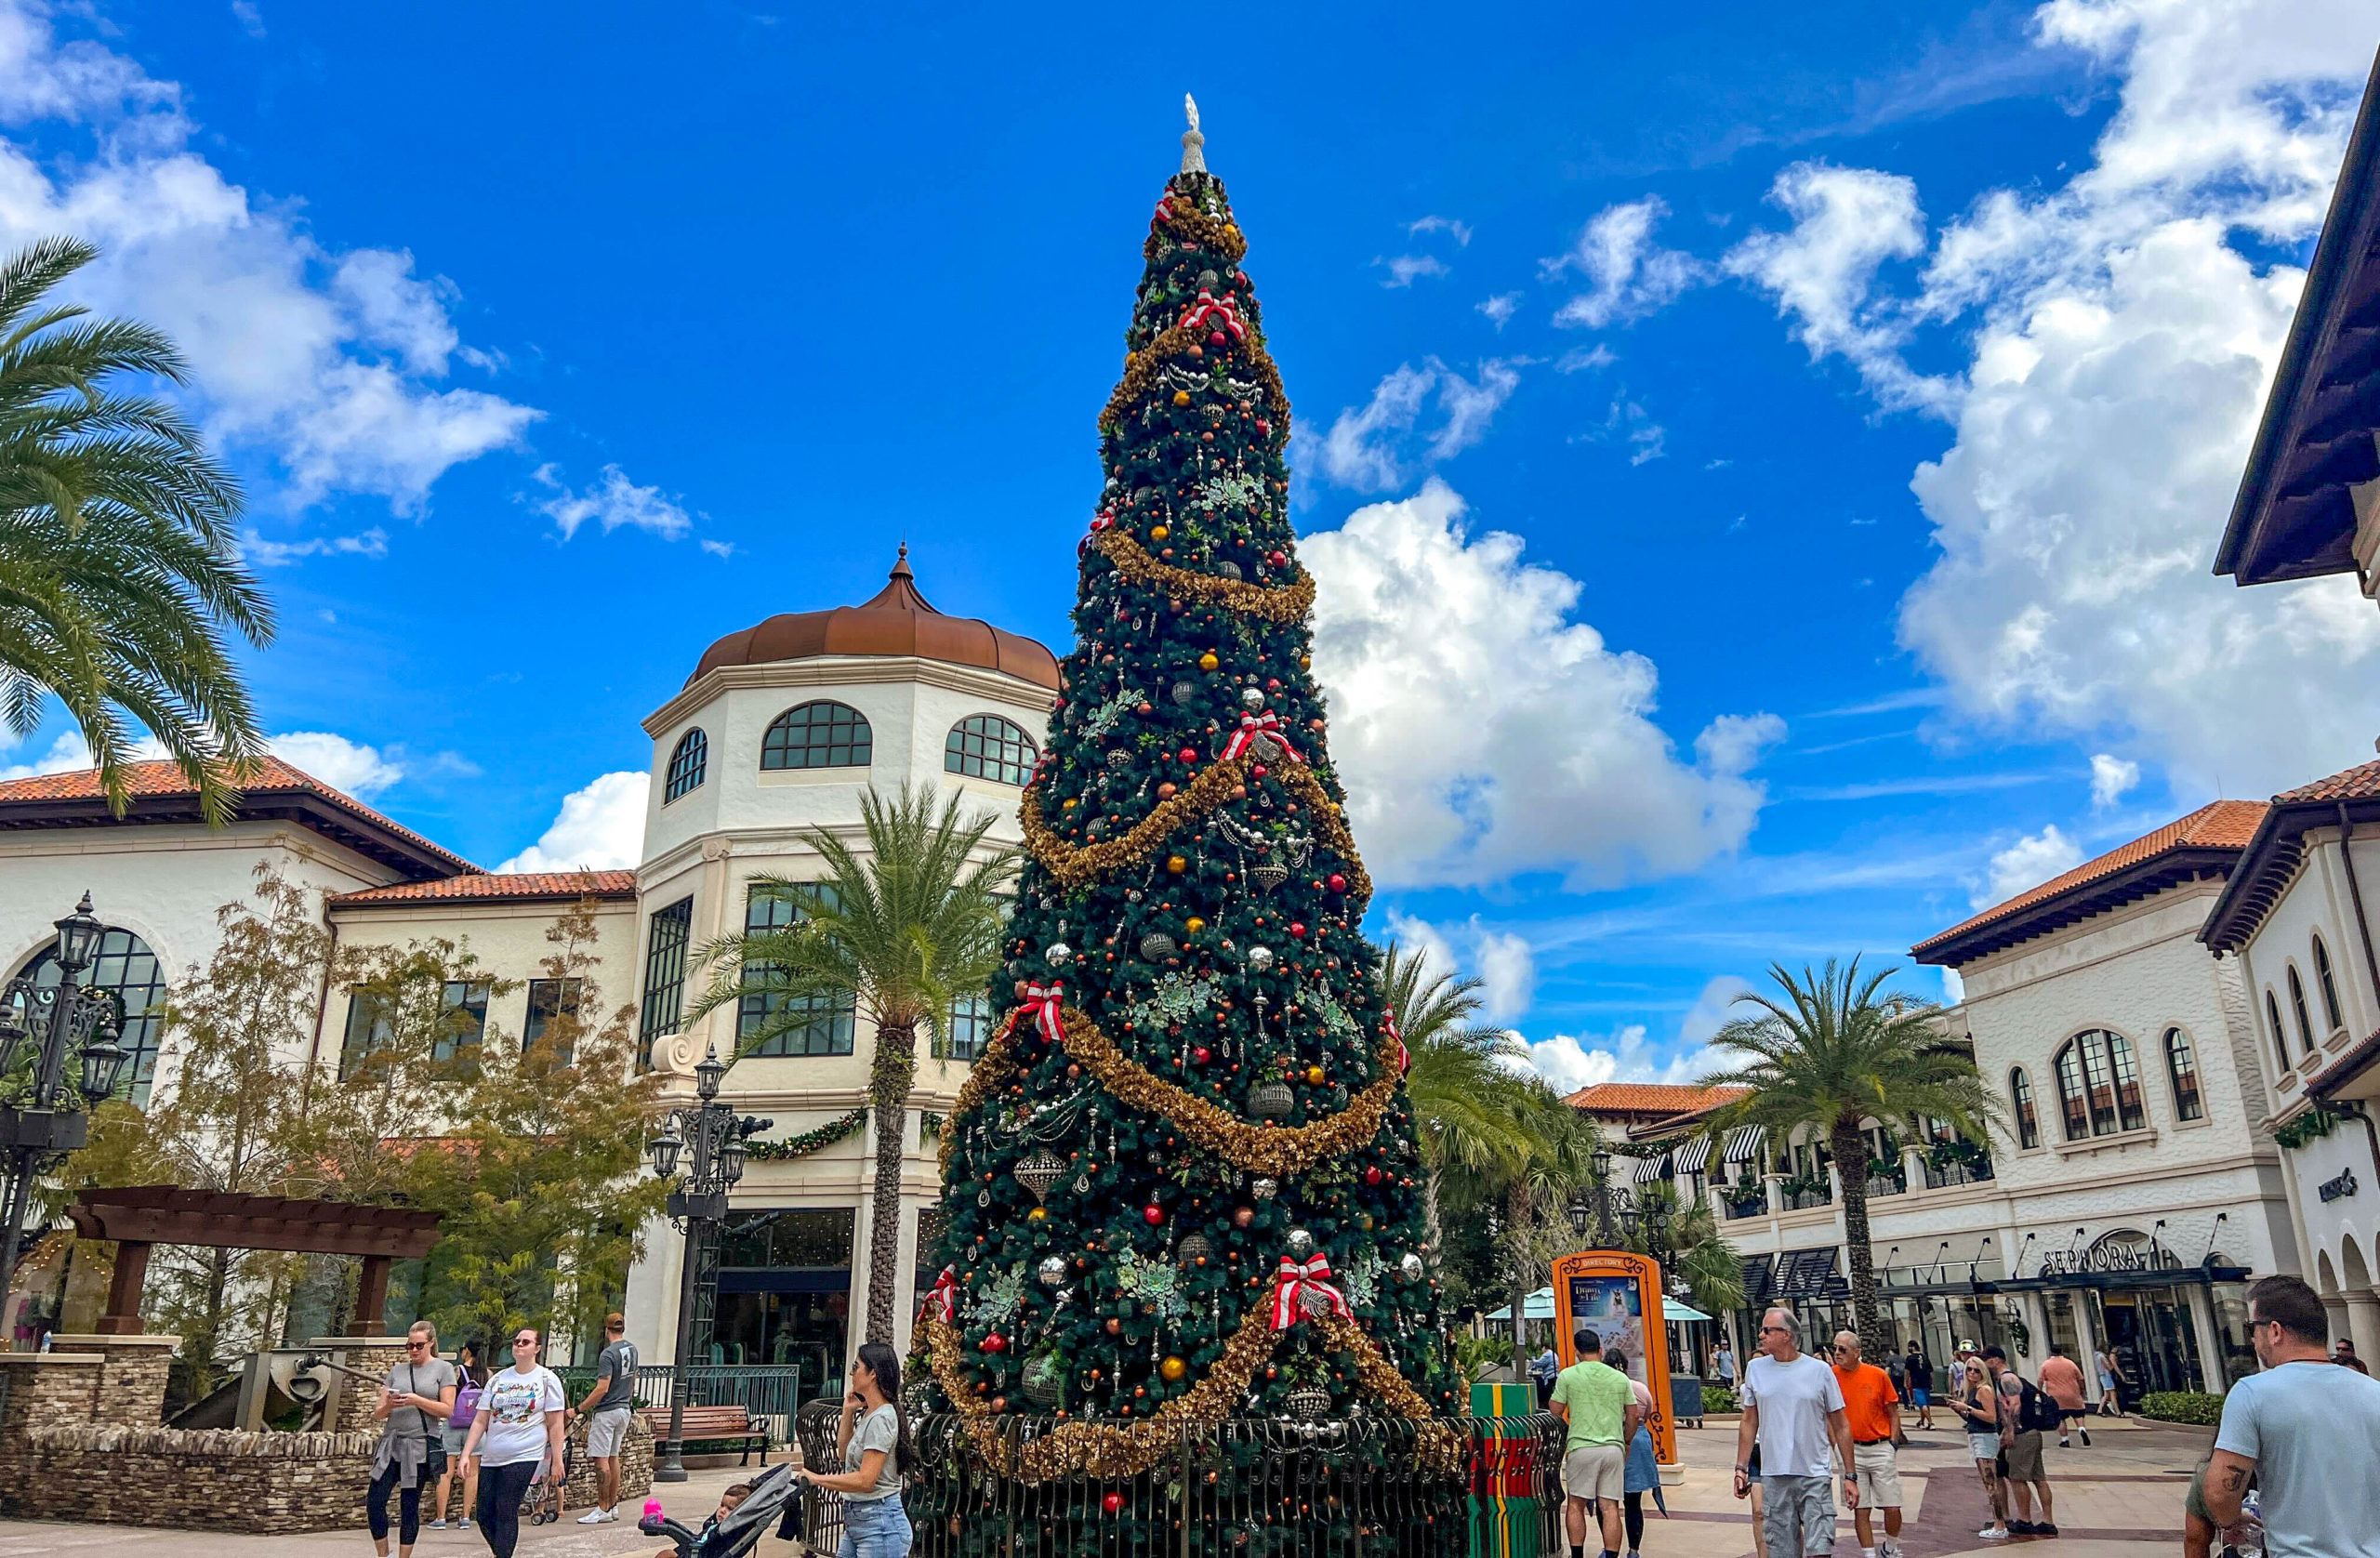 Disney Springs Christmas Tree